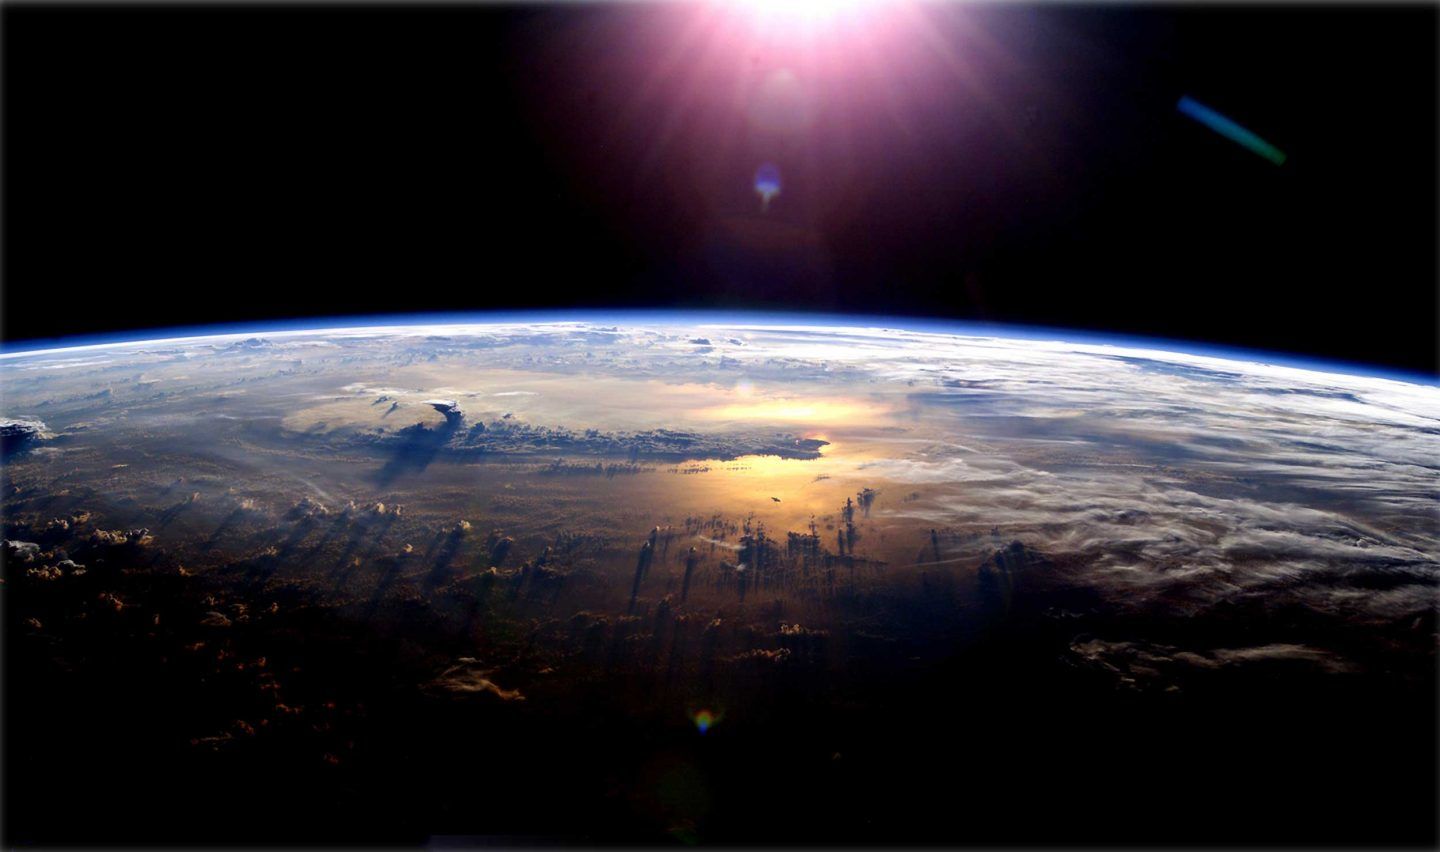 فرضية الأرض النادرة: ما هي ندرة الحياة المعقدة الموجودة على الأرض؟